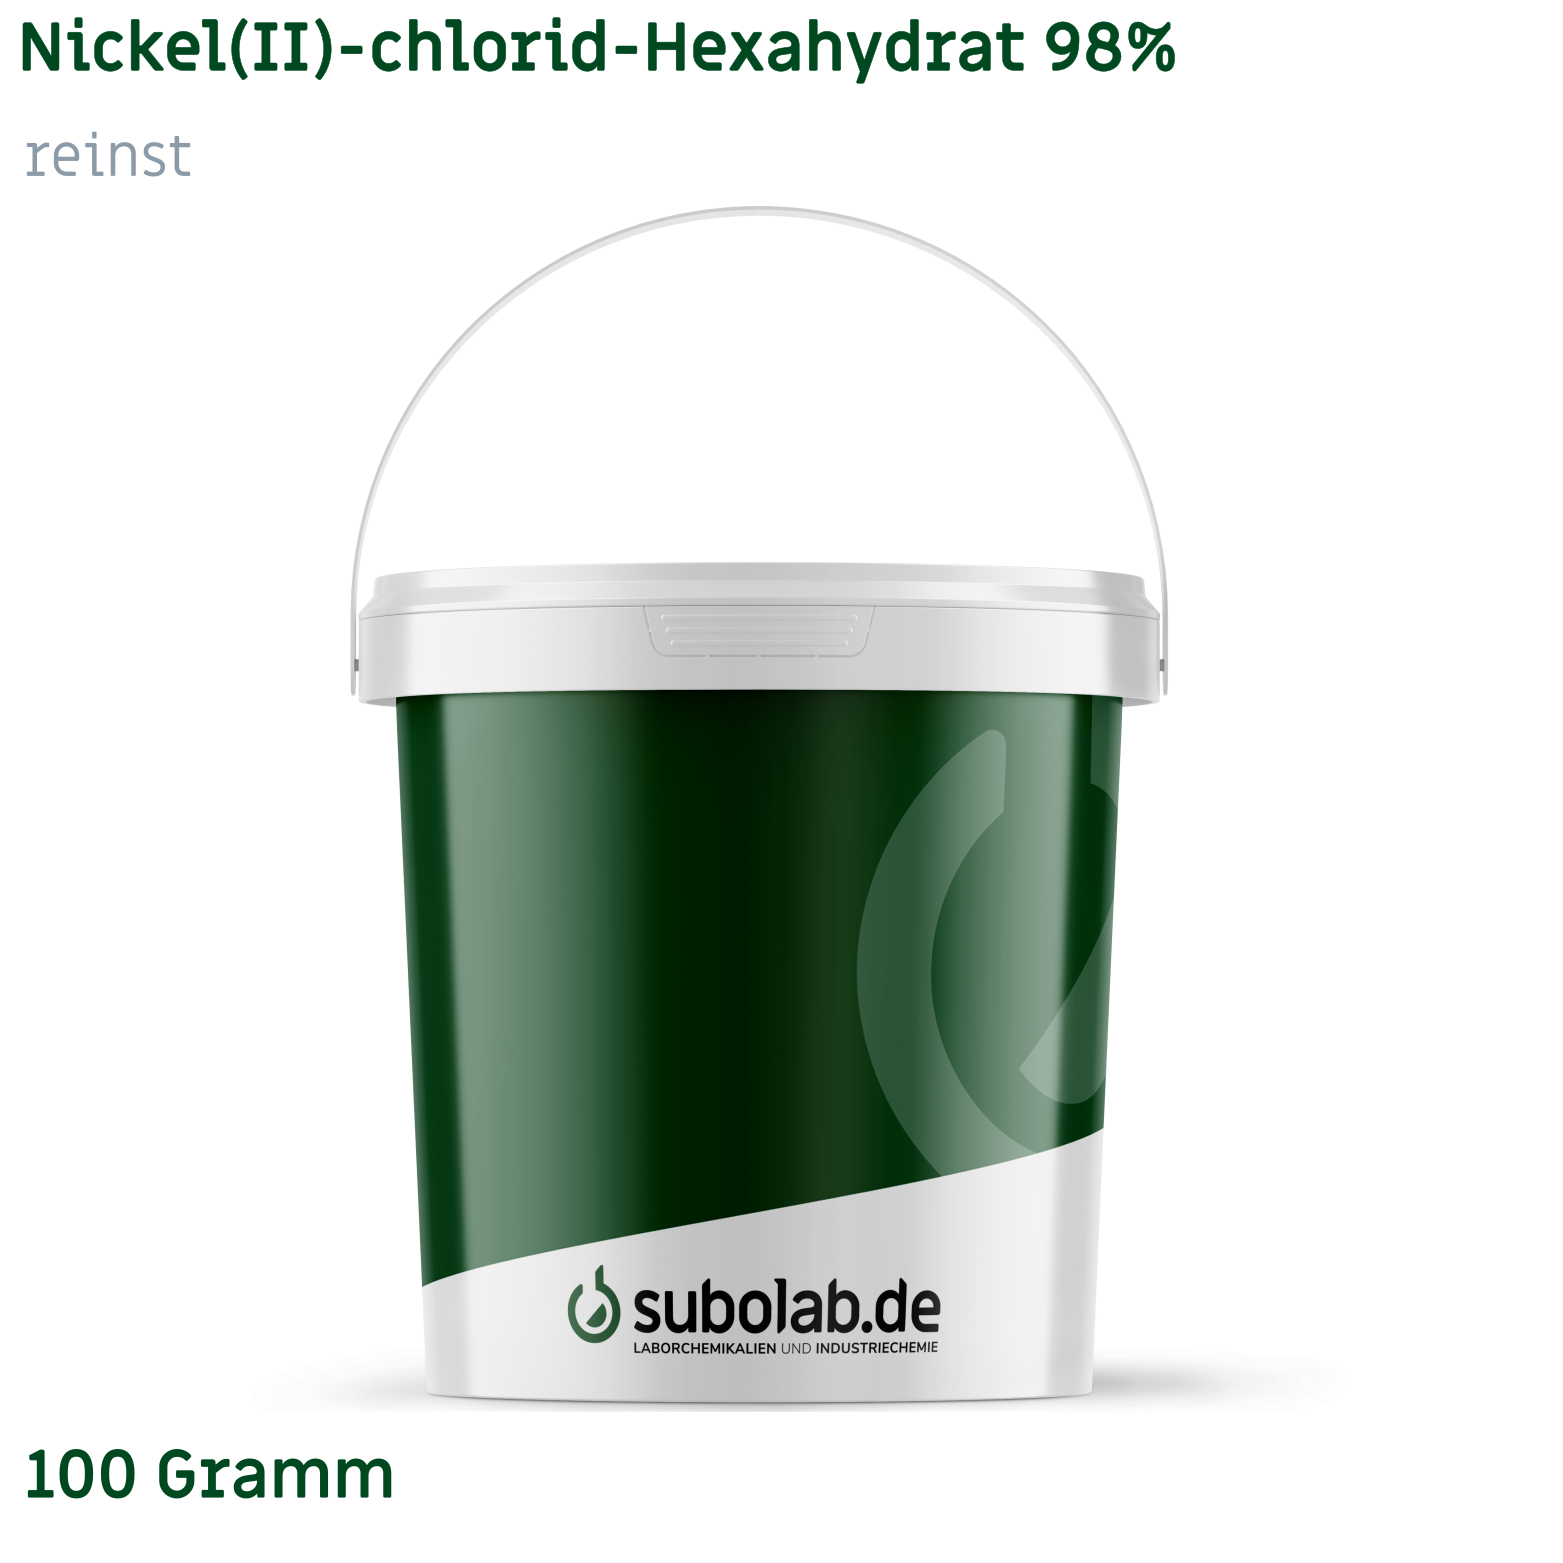 Bild von Nickel(II)-chlorid - Hexahydrat 98% reinst (100 Gramm)